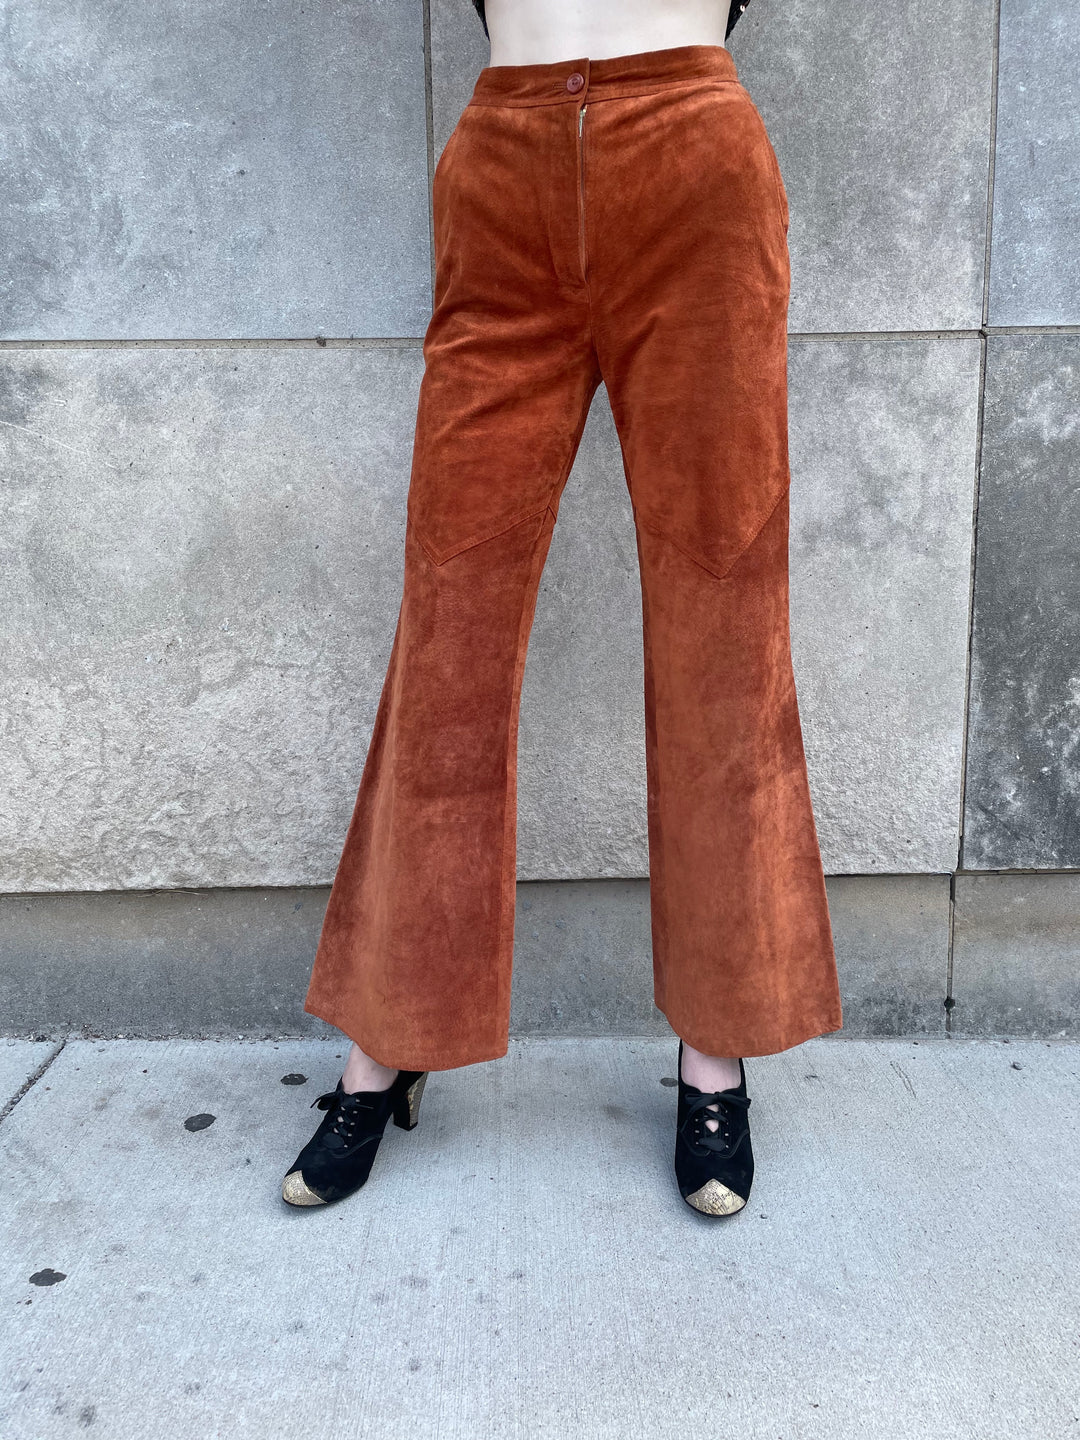 70s Purple Orange Floral Bell Bottom Pants, Alex Coleman – The Hip Zipper  Nashville